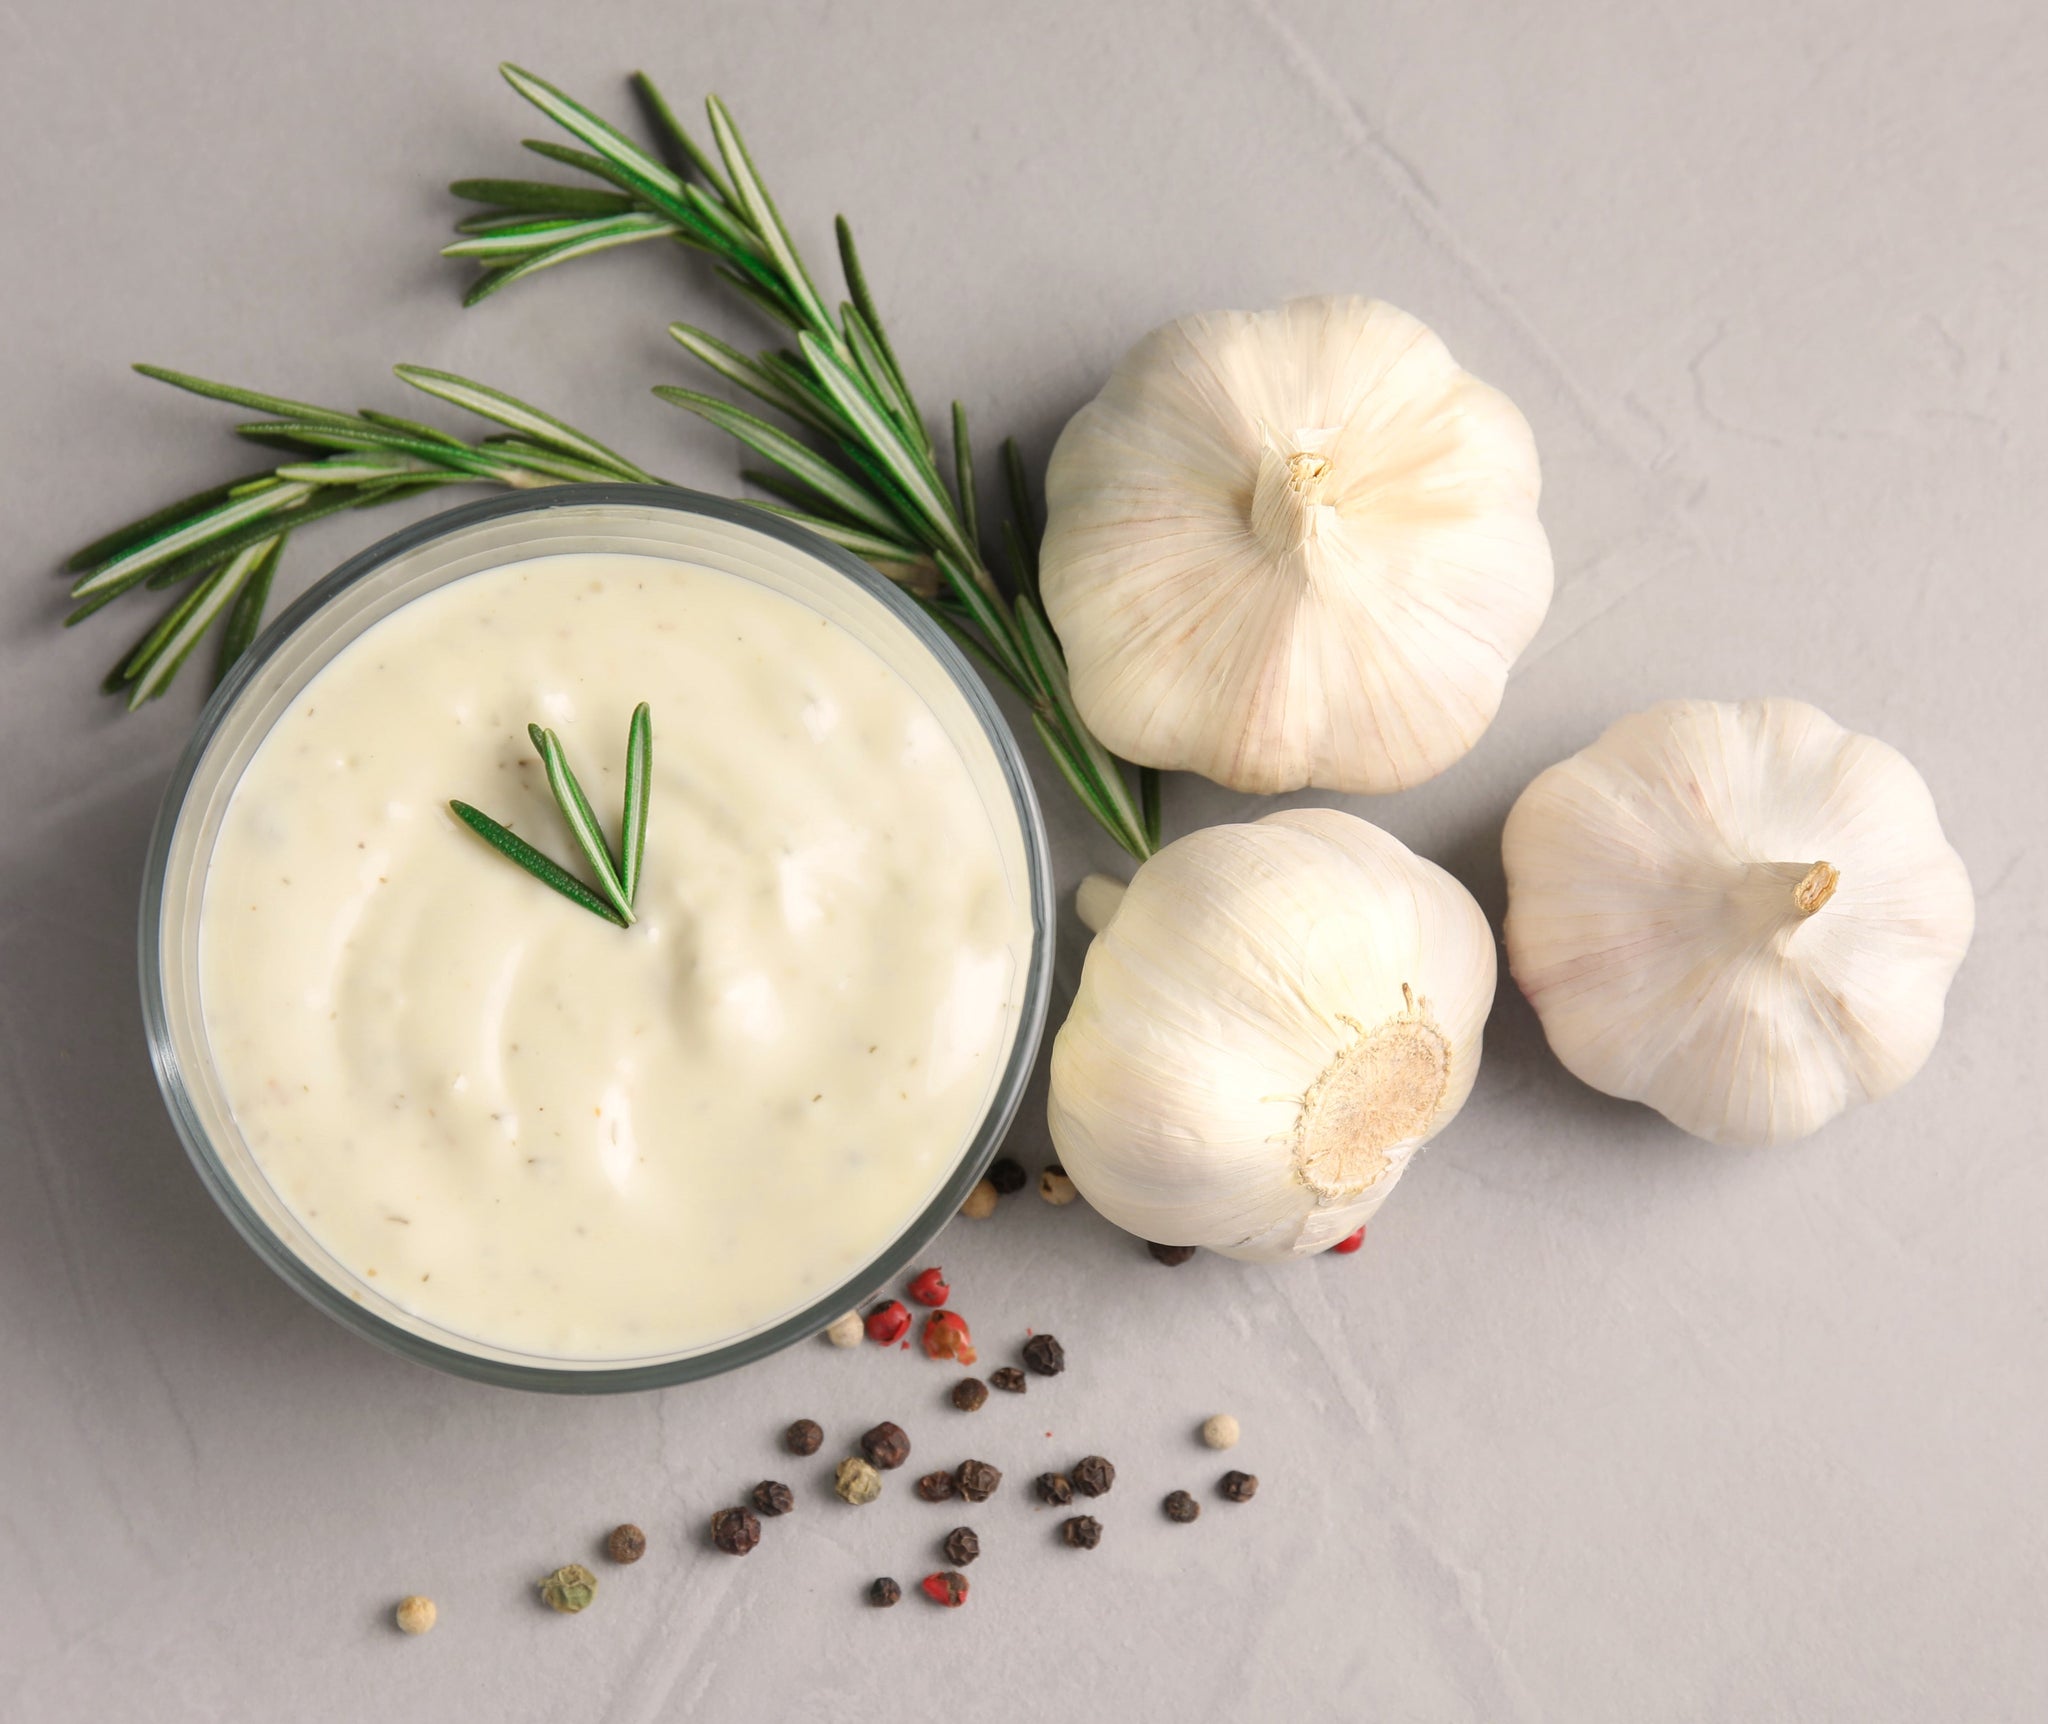 What is Garlic Aioli?